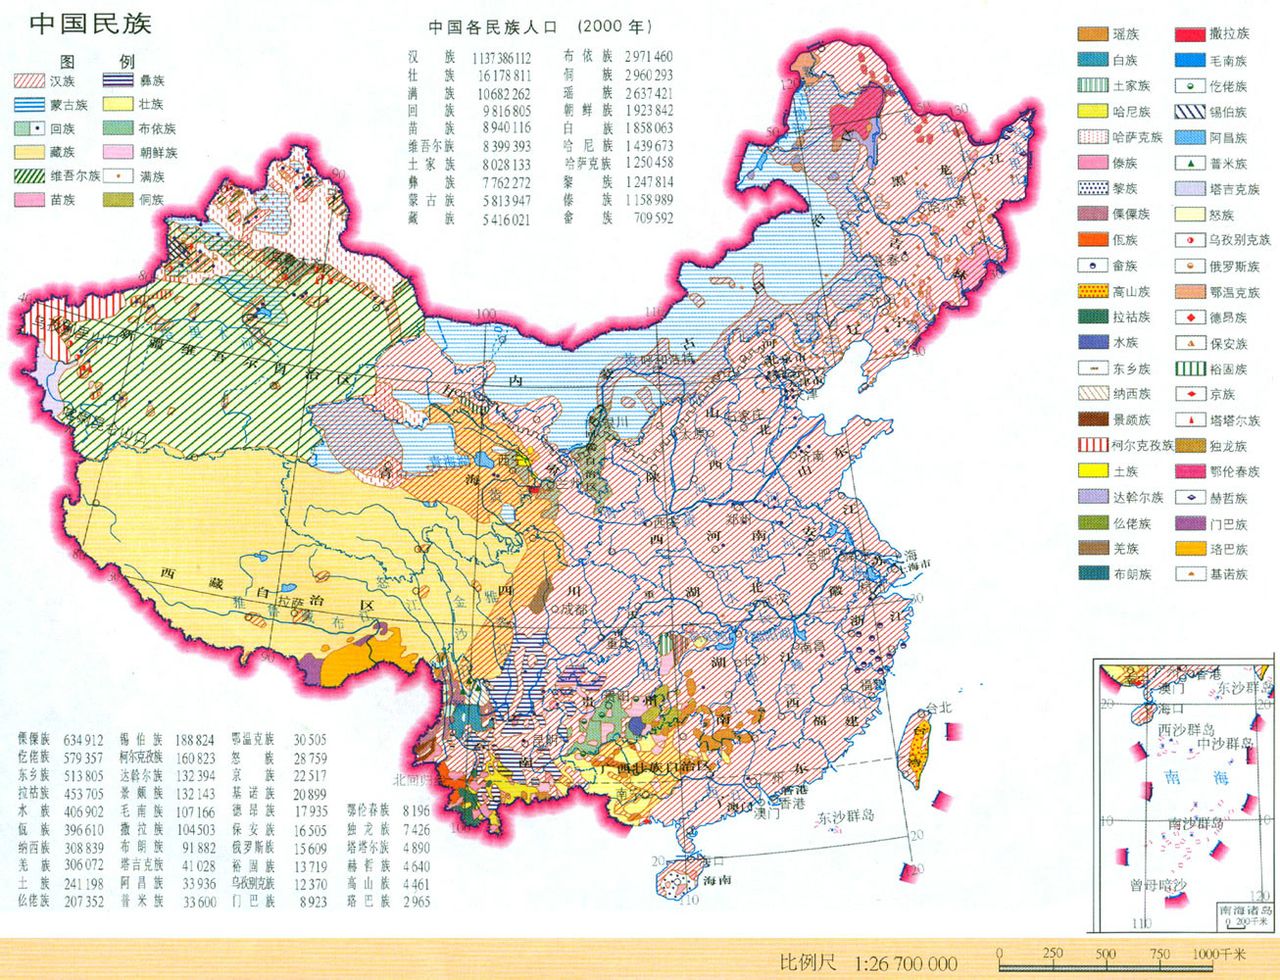 中國少數民族分布簡表